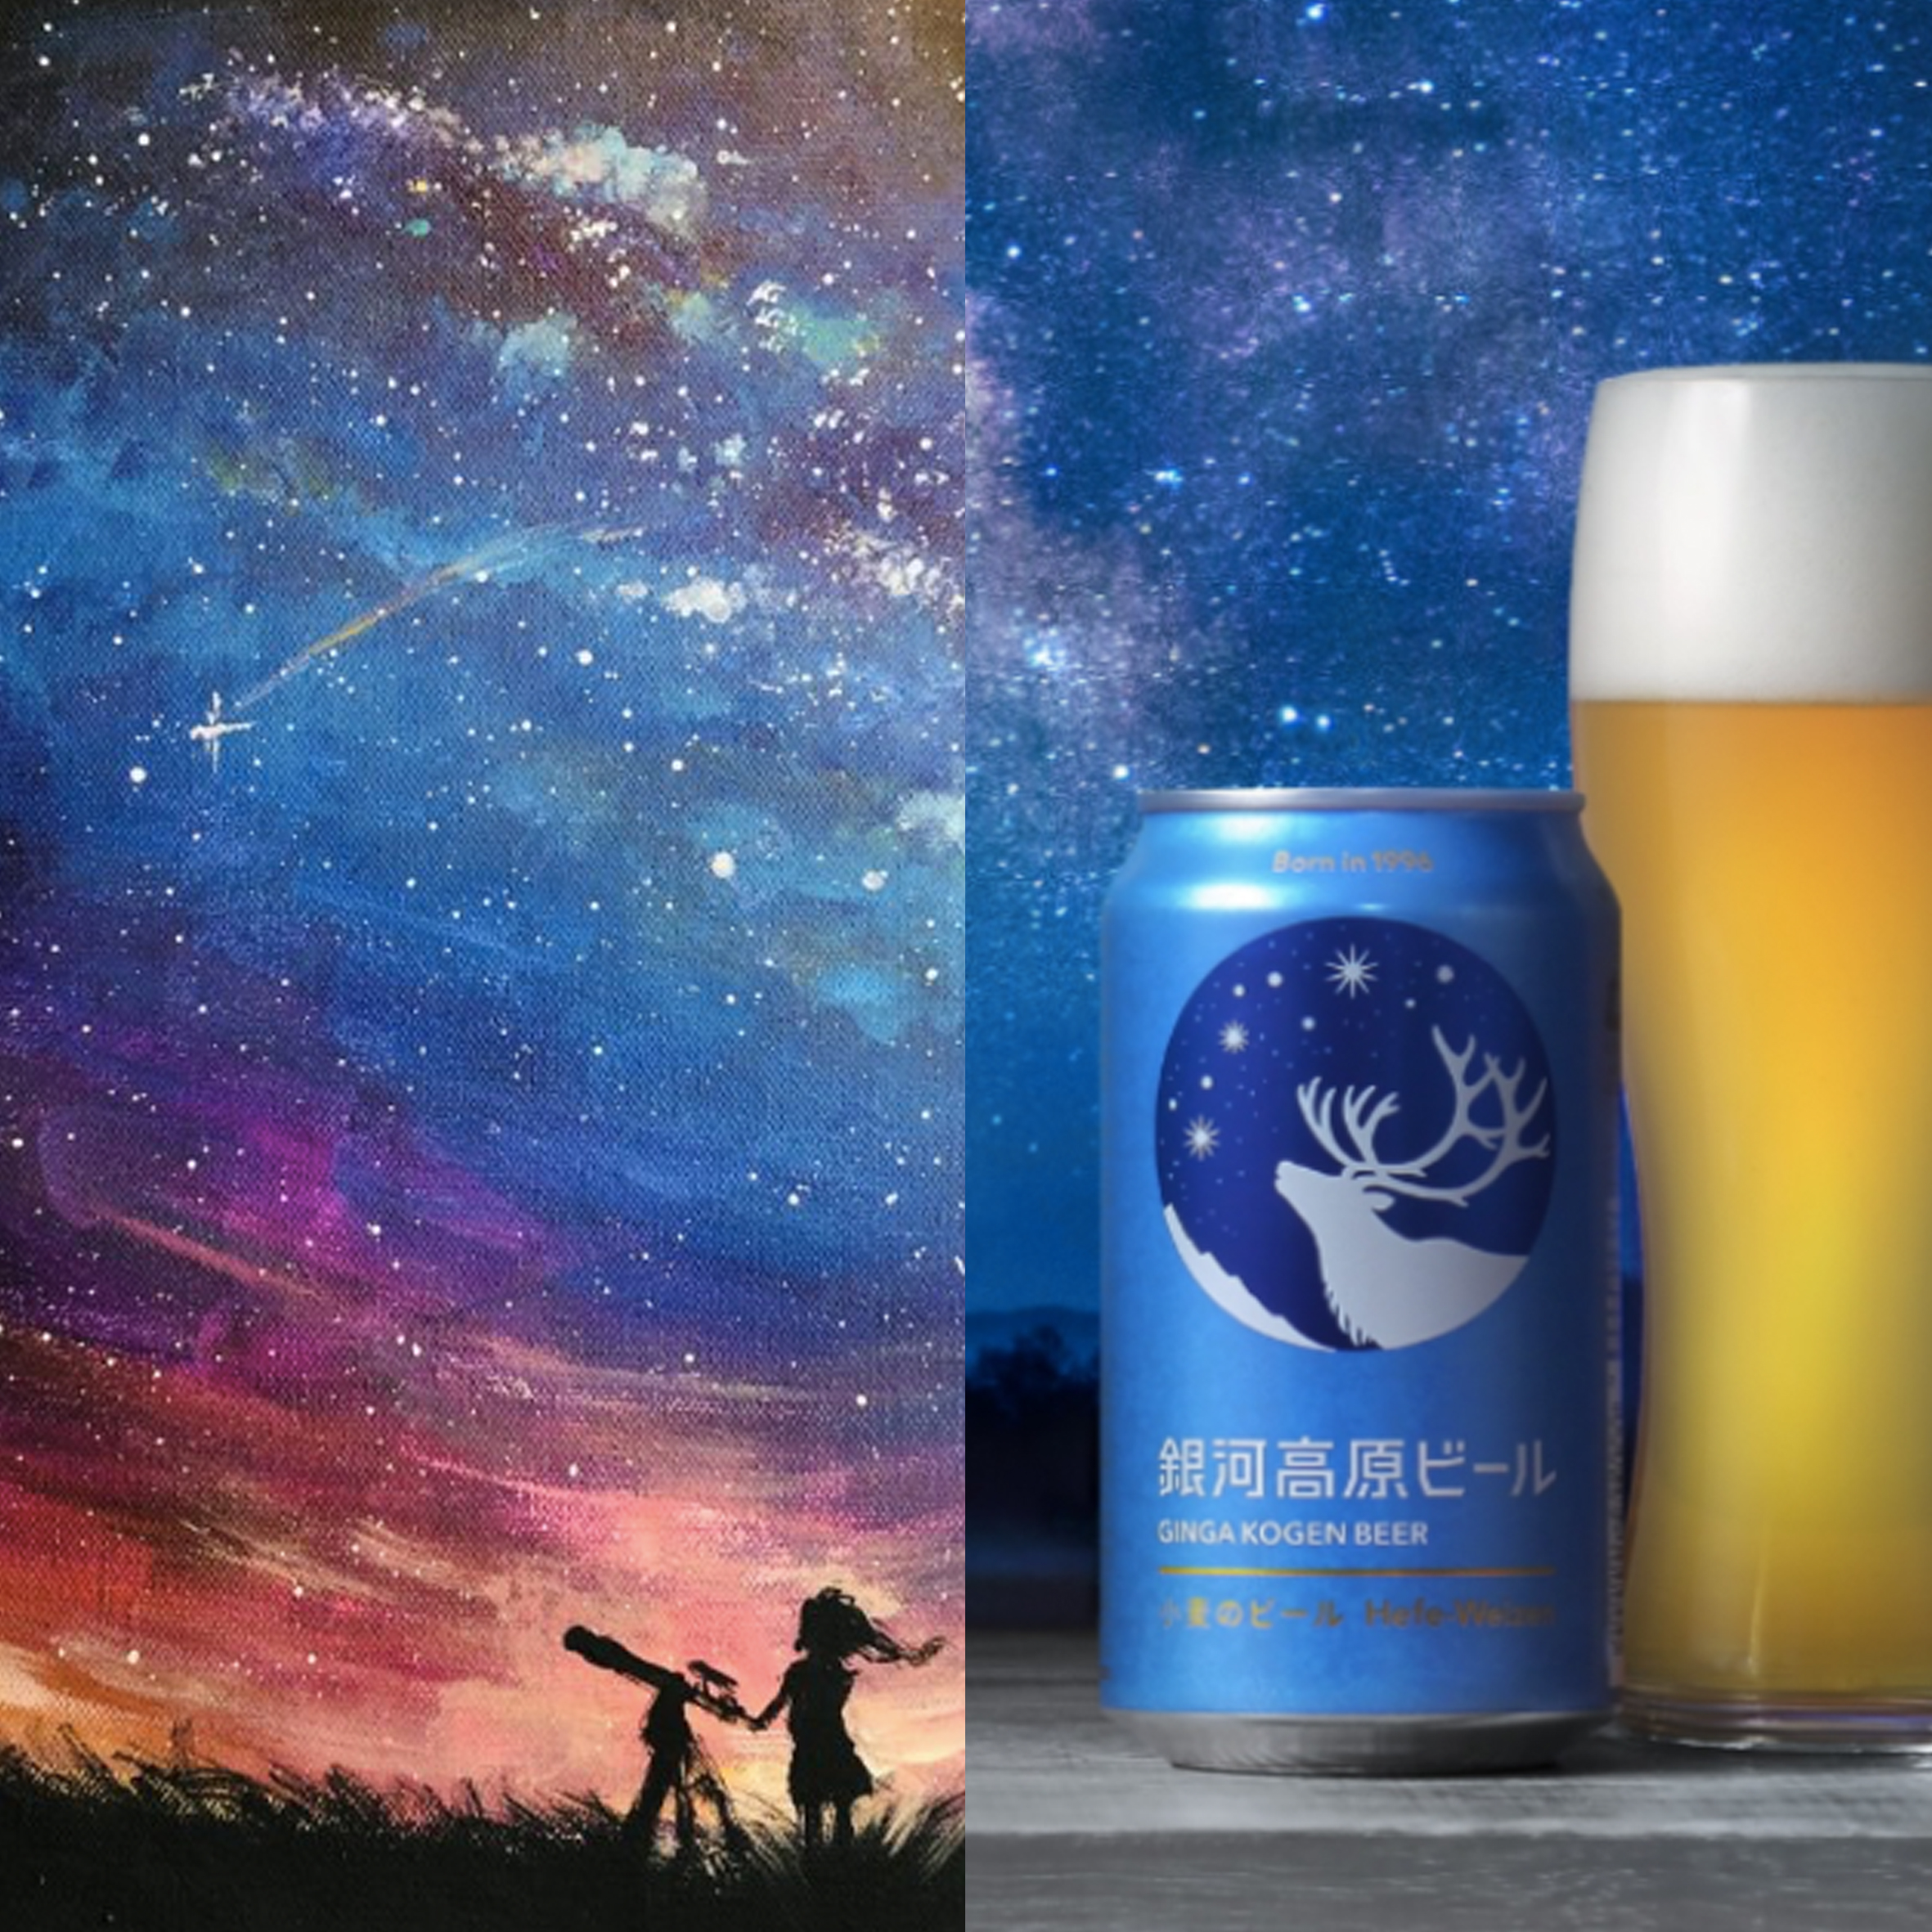 スターゲイザー w/ 銀河高原ビール Stargazer w/ Ginga Kogen Beer